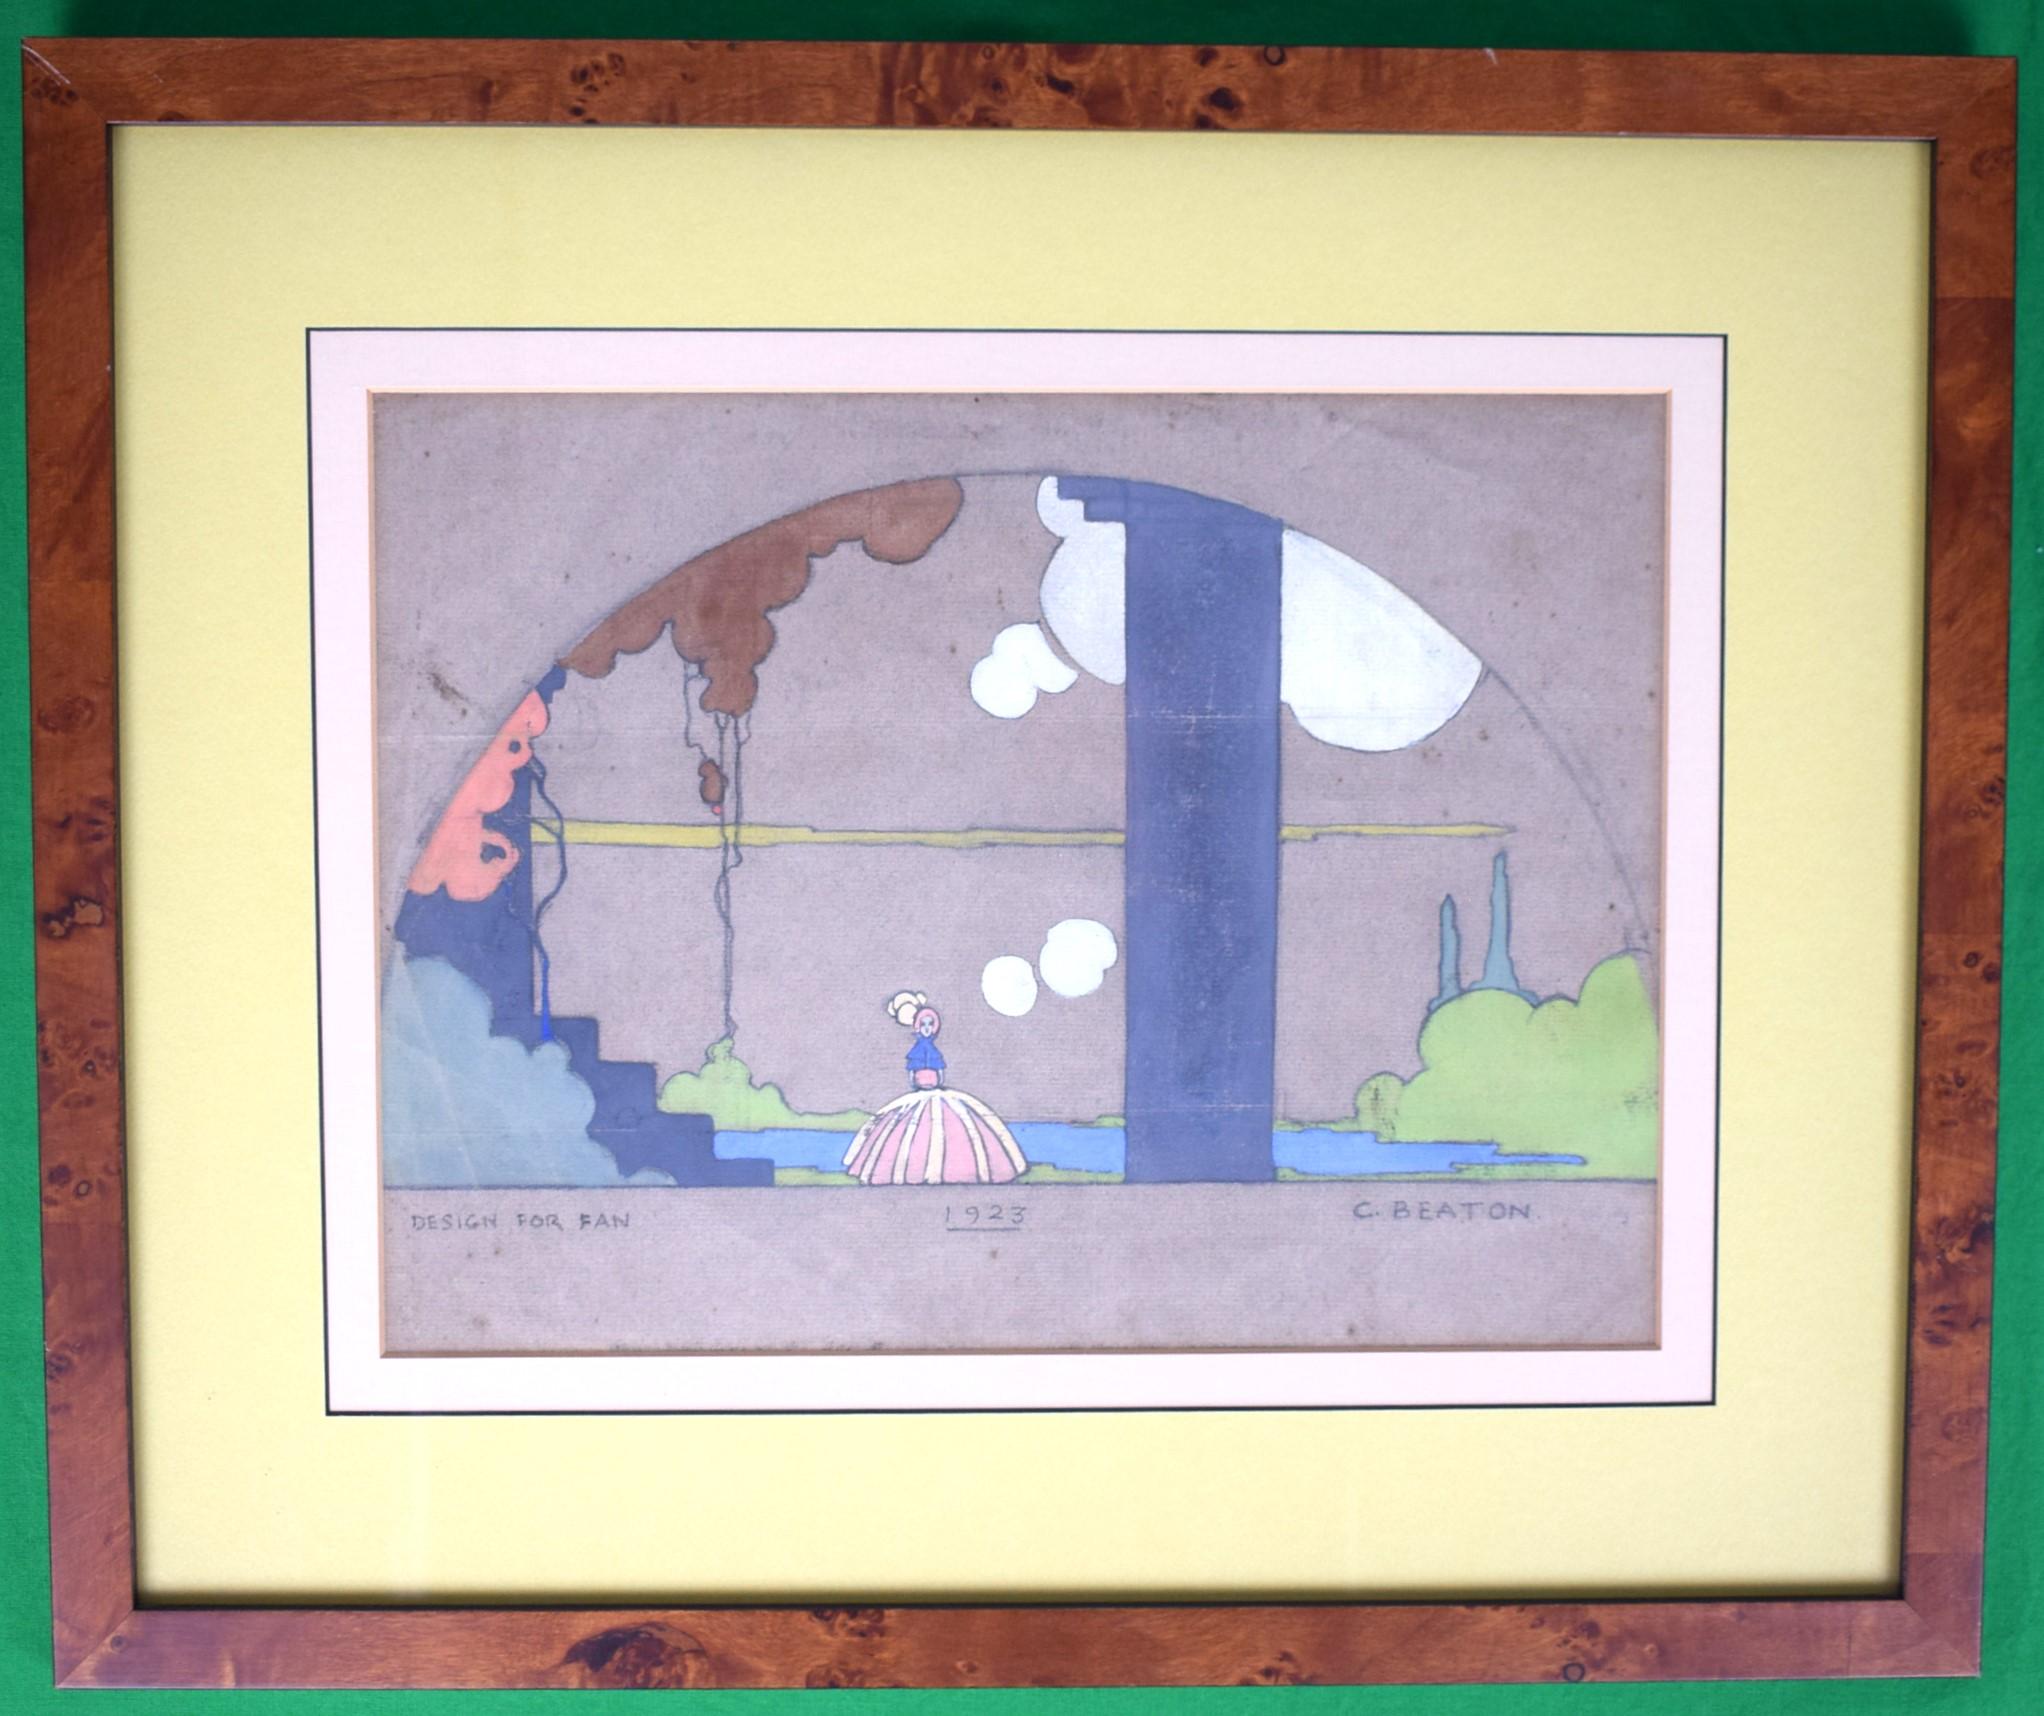 Design/One, signé Cecil Beaton à l'âge de 19 ans (1904-1980) et daté de 1923, gouache pastel sur papier parchemin.

Art Sz : 8 7/8 "H x 11 7/8 "W

Taille du cadre : 15 1/4 "H x 18 1/4 "L